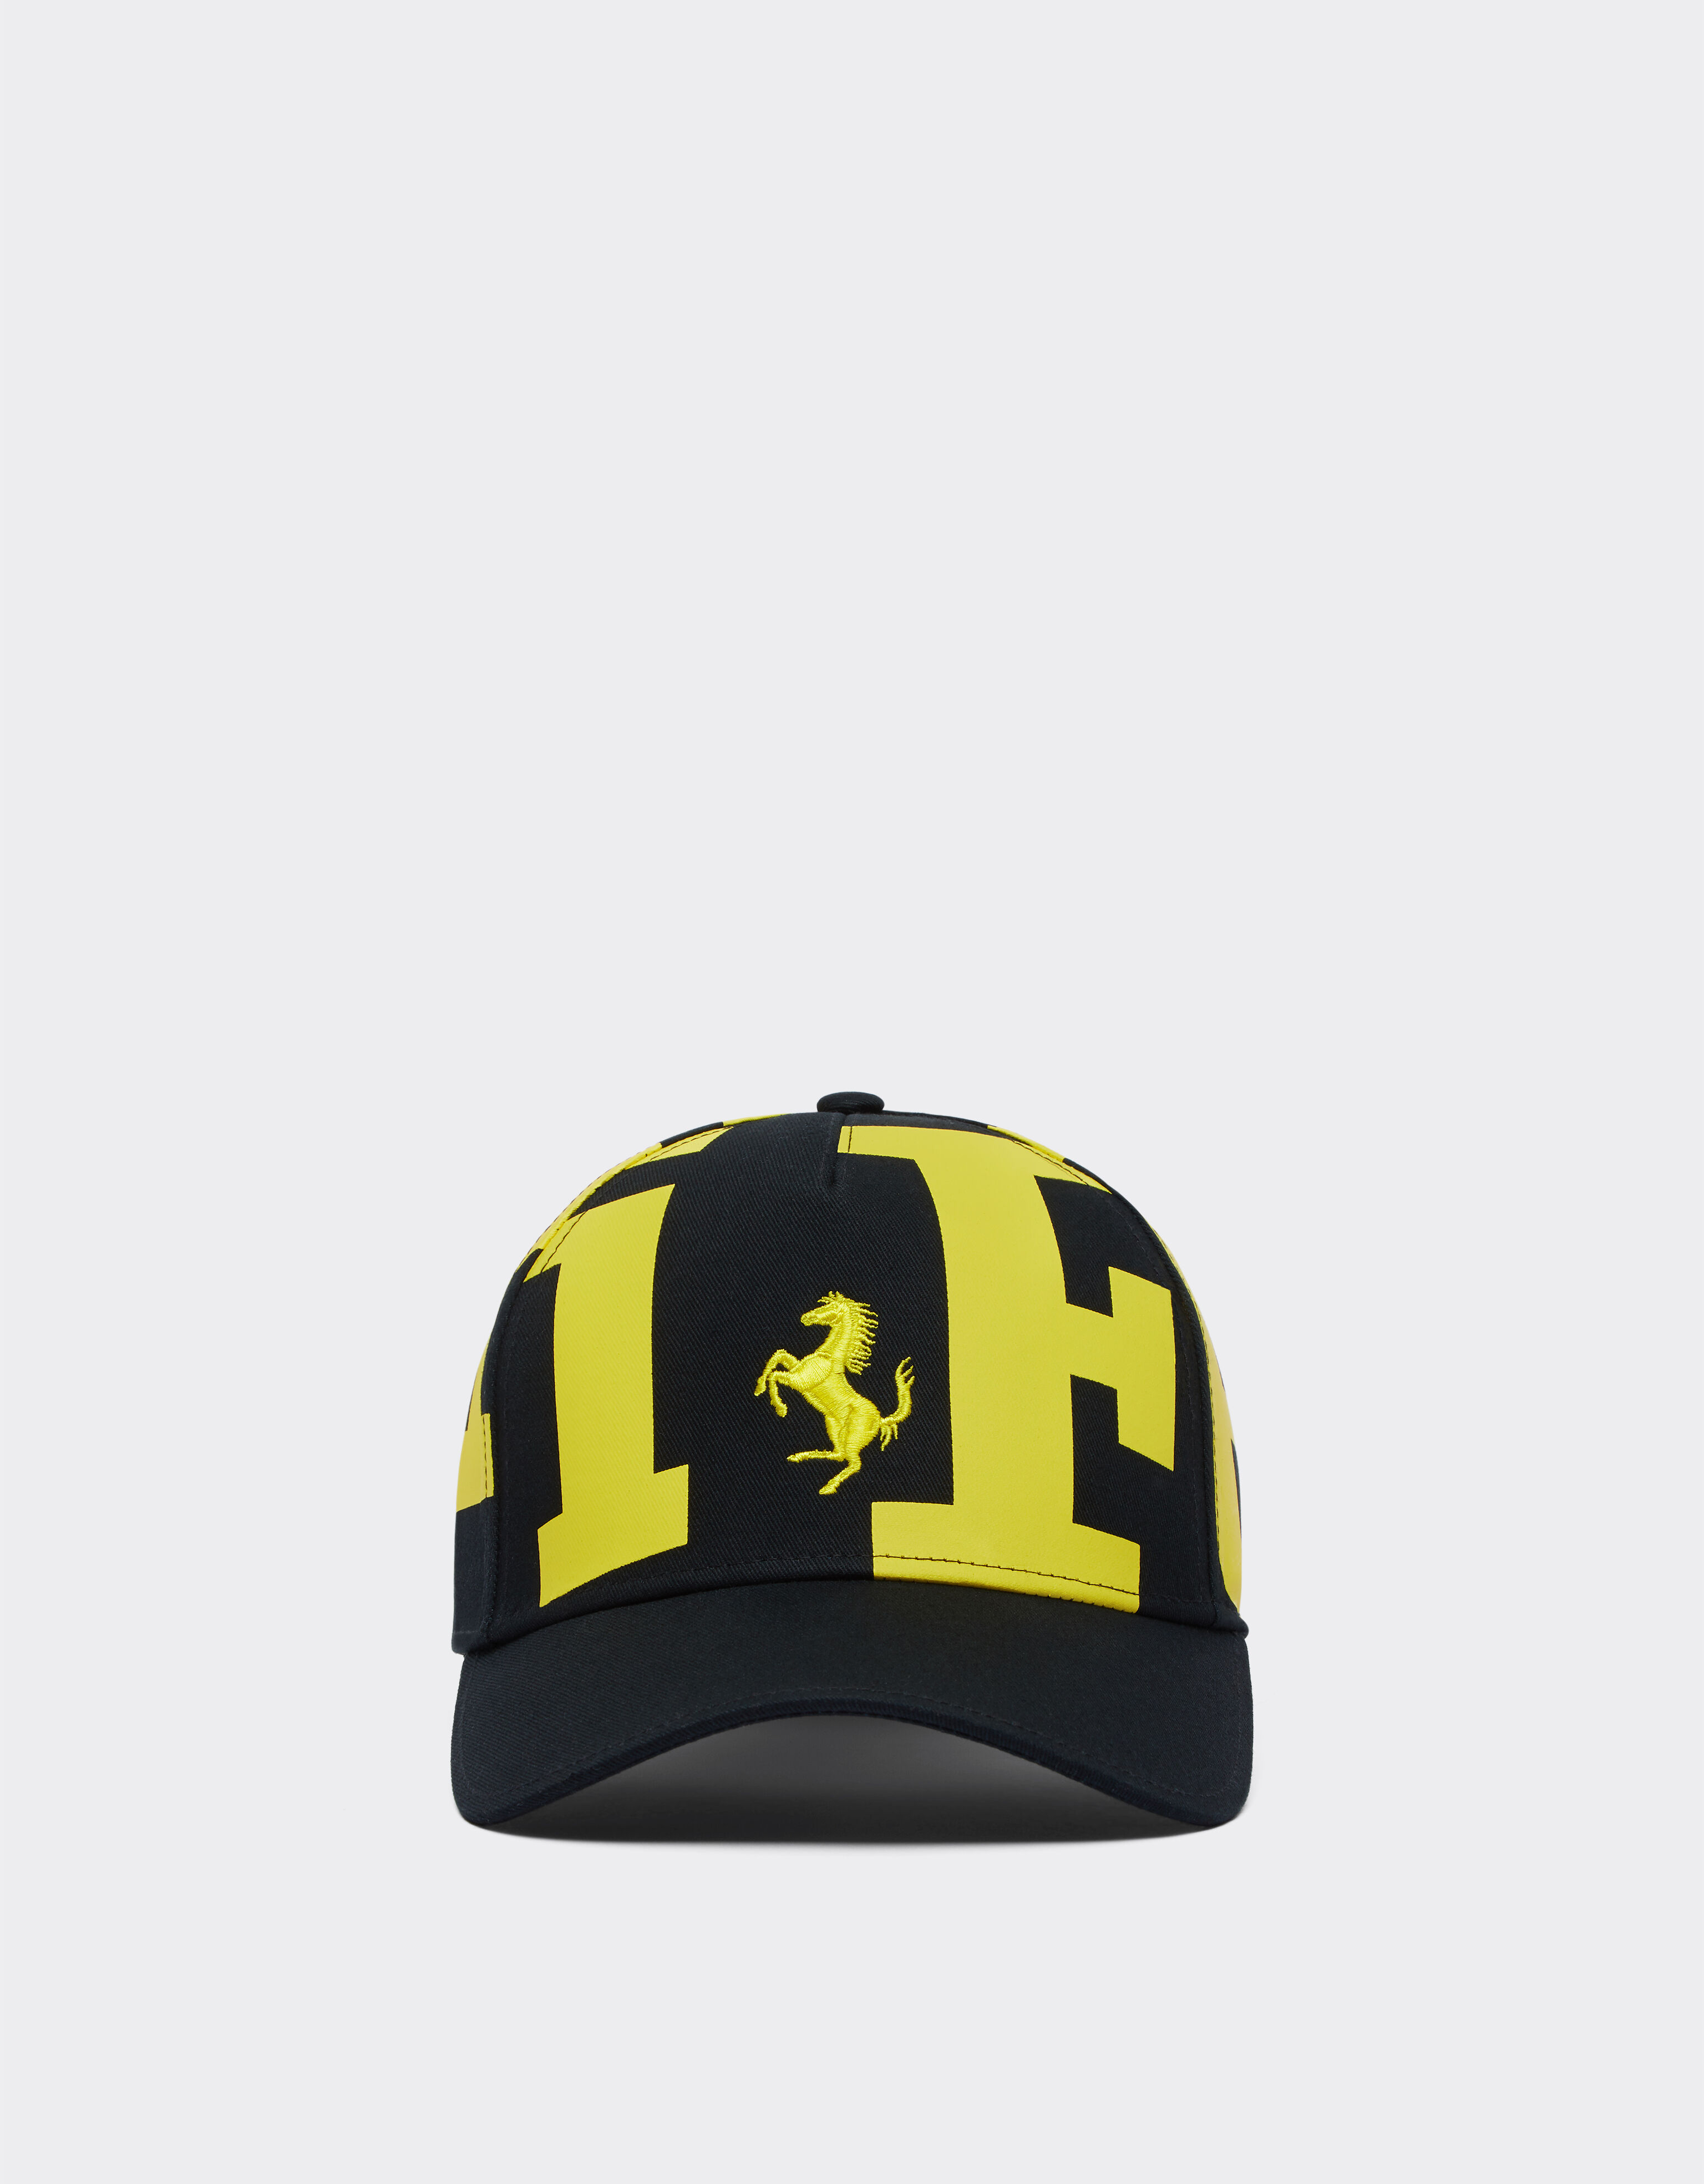 Ferrari Children’s cap with Ferrari logo Navy 20815f